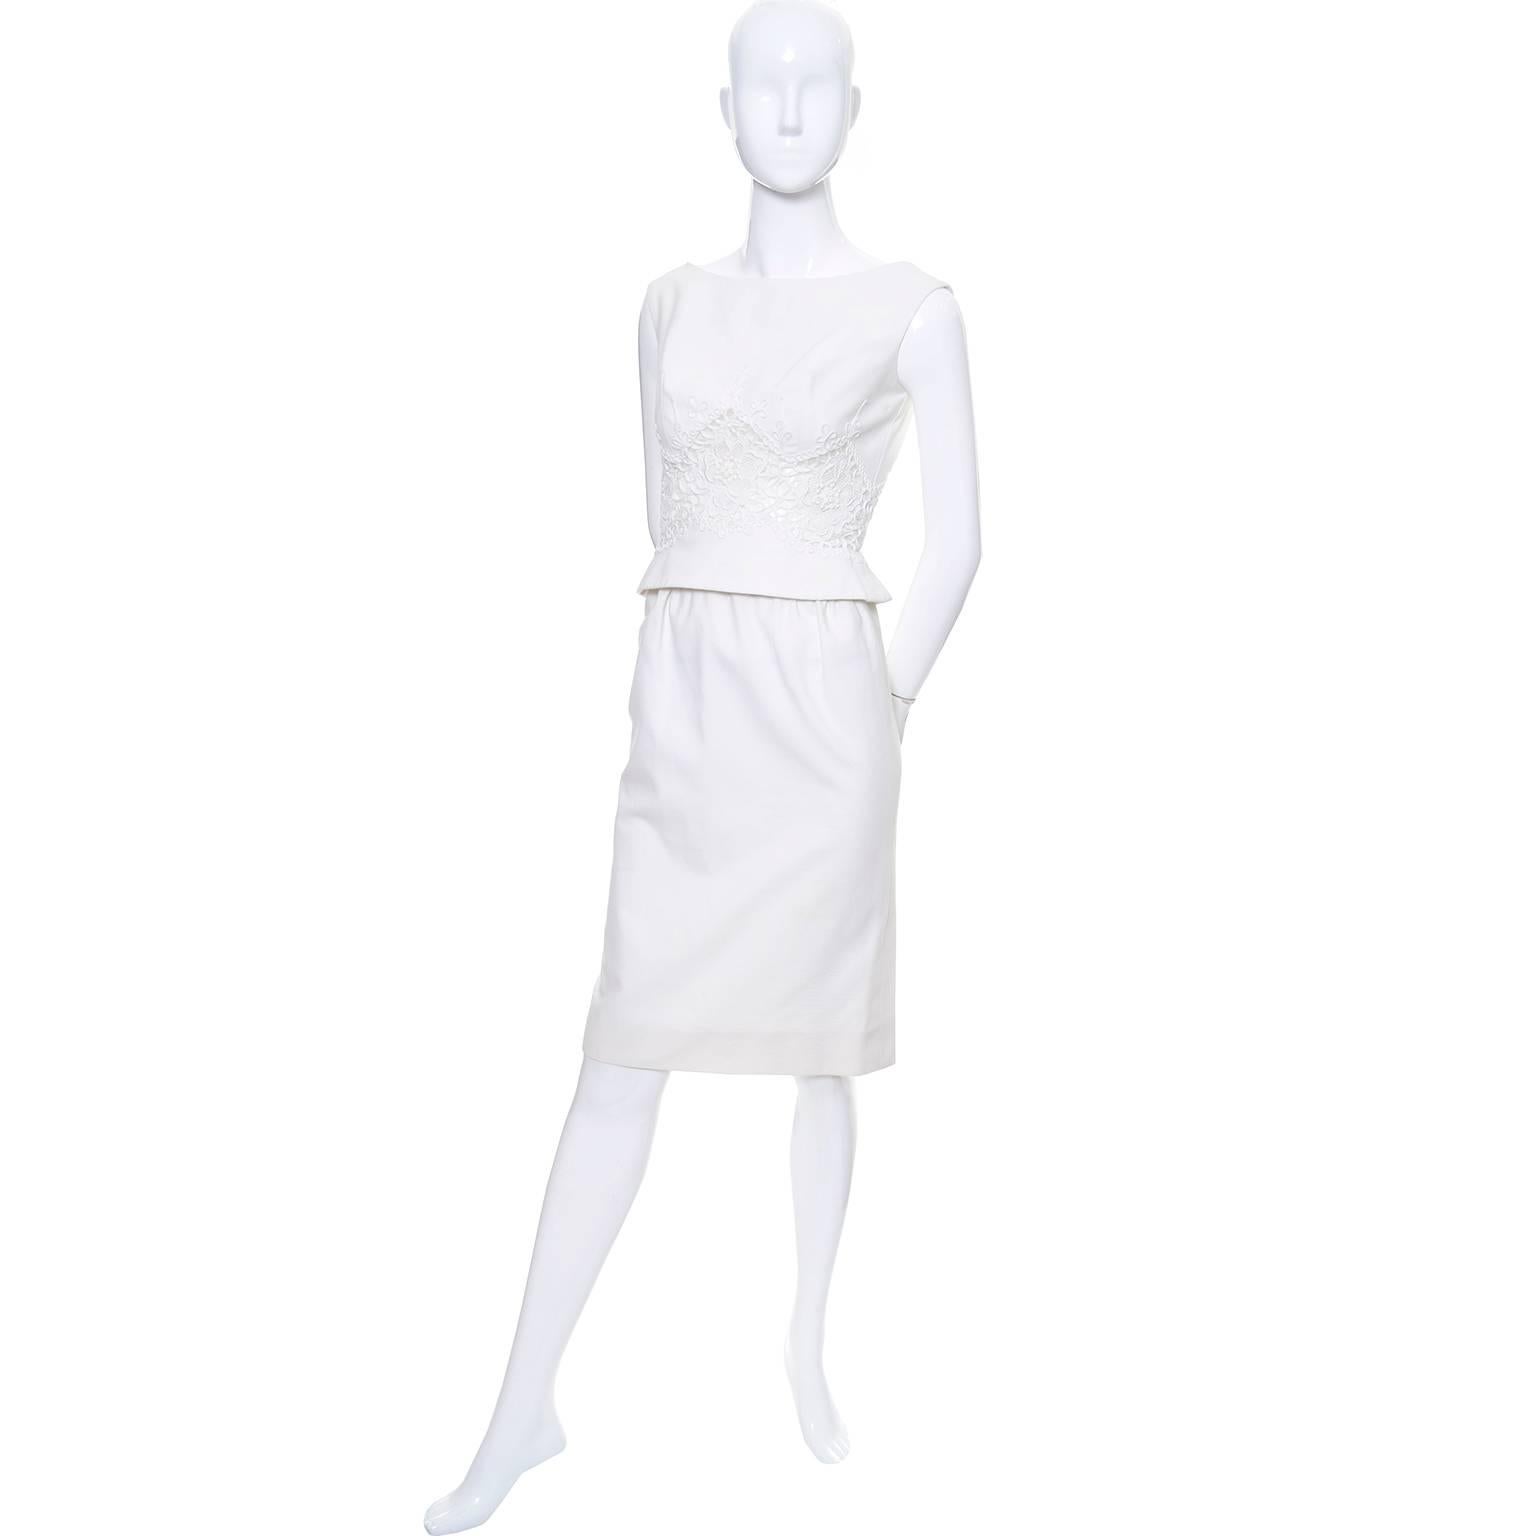 Dies ist ein hervorragendes 2-teiliges Vintage-Kleid aus weißem Baumwollpiqué mit ärmellosem Schößchen-Oberteil und schmalem, geradem Rock.  Diese Carlye Vintage 1960er Jahre Outfit hat einen hübschen Rücken Bogen und unglaubliche peek a boo